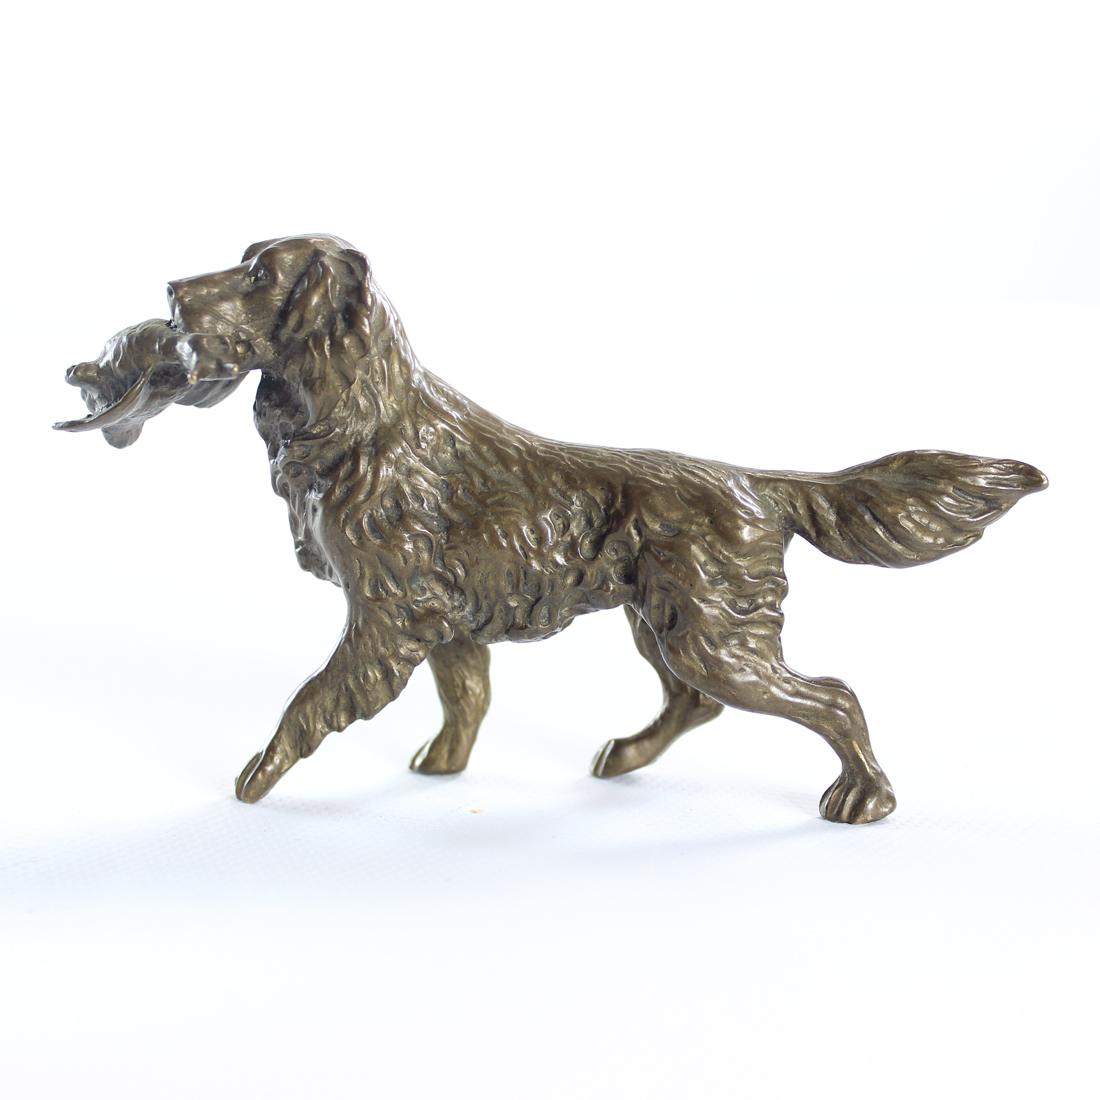 Belle sculpture en bronze d'un chien de chasse, un retriever avec un canard. La sculpture a été produite en Tchécoslovaquie à l'époque de l'art déco. Un magnifique travail artistique détaillé montre le chien parfaitement avec chaque poil et chaque